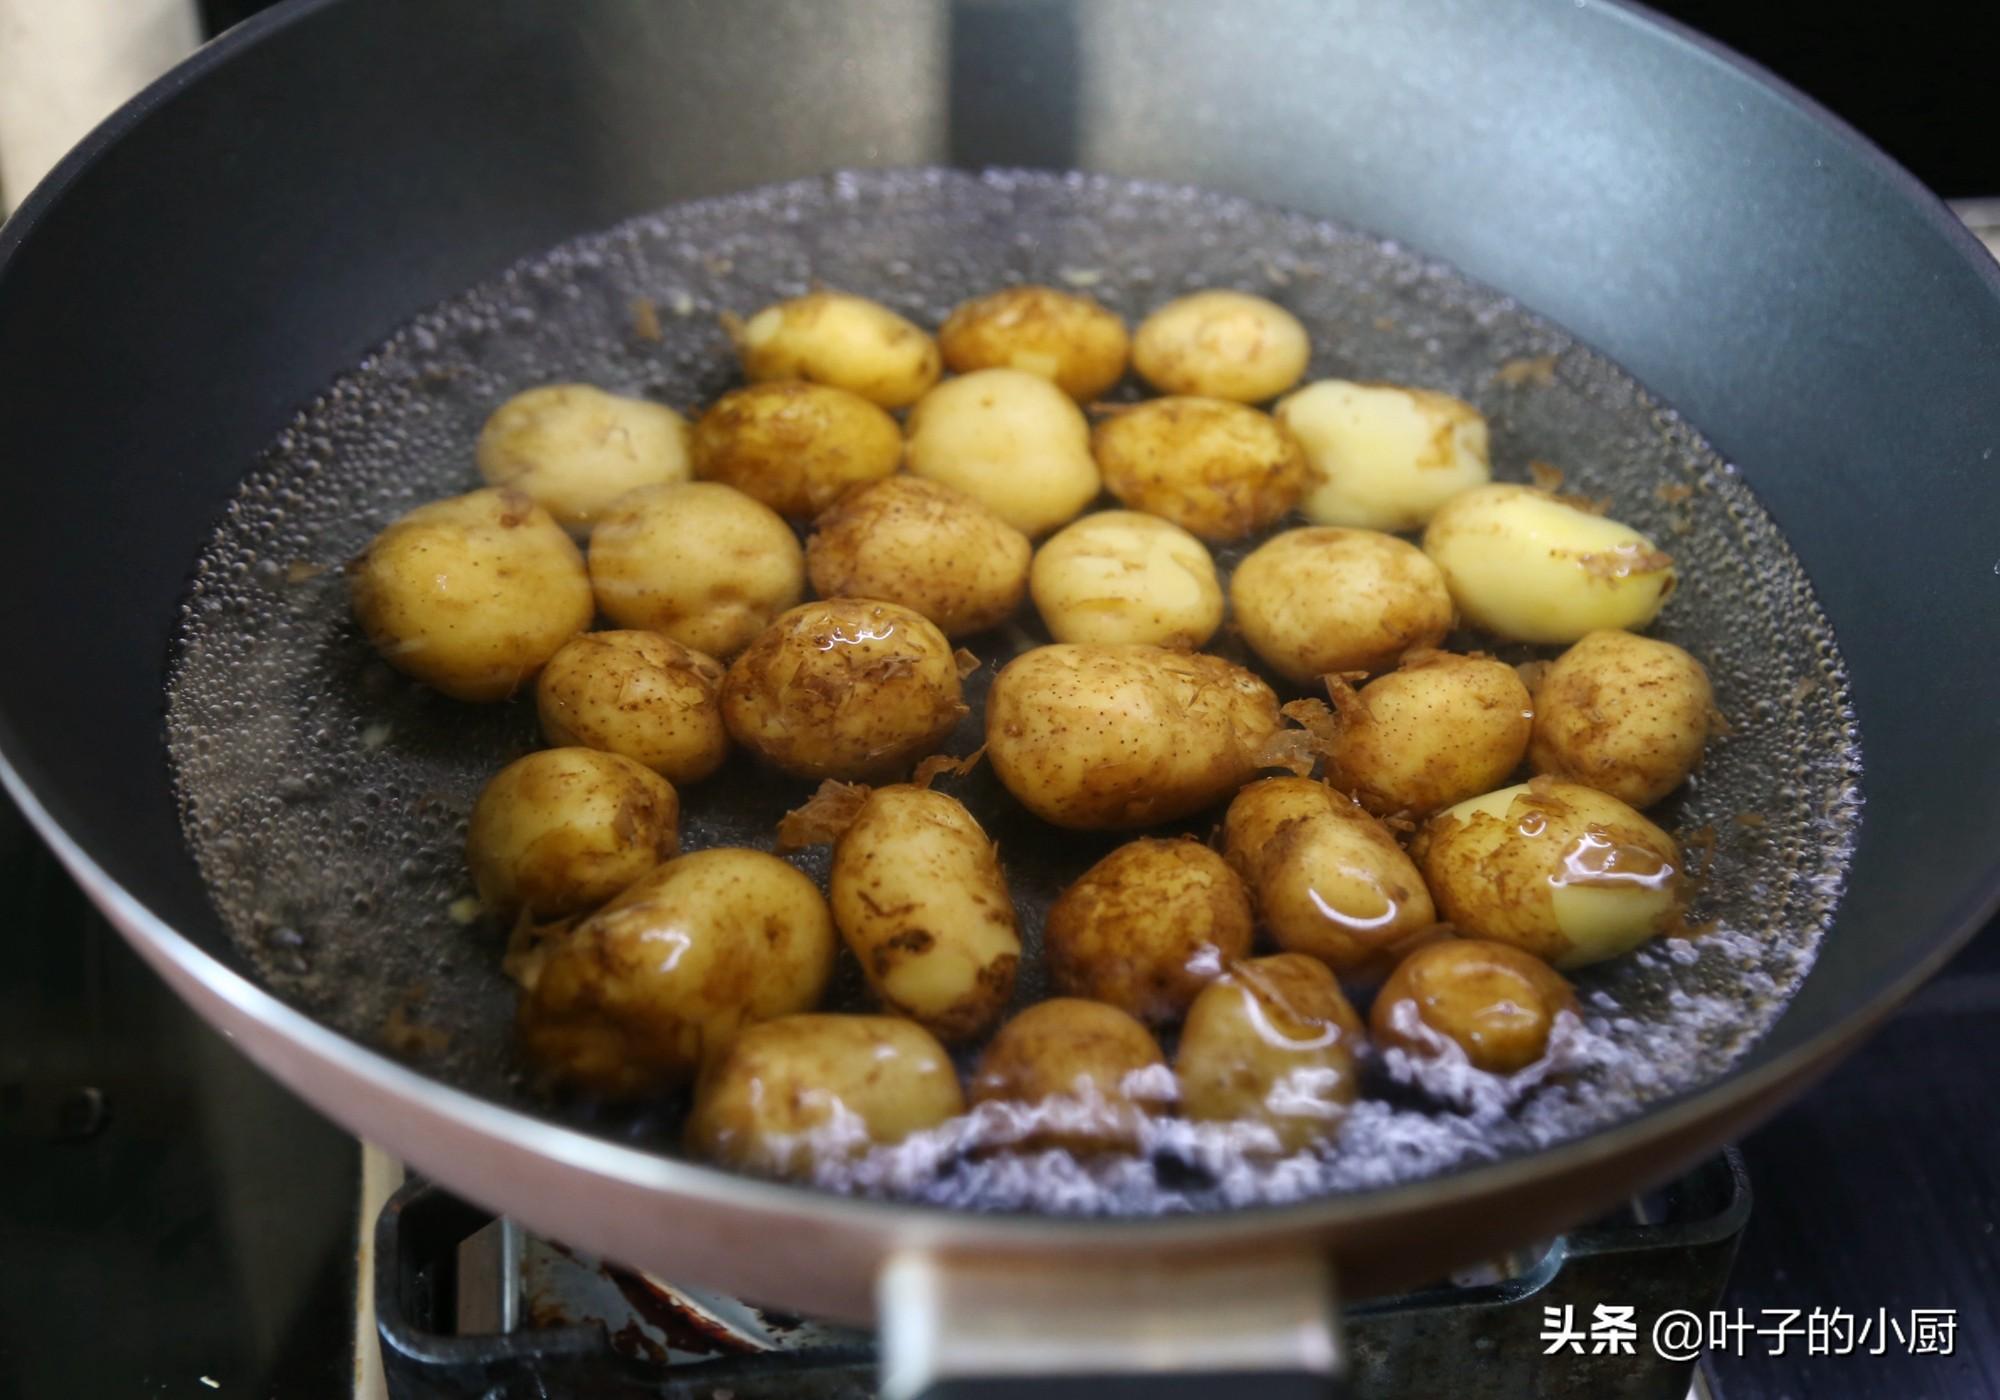 土豆鸡块的做法 ，方法对了，油盐都省了，香糯好吃，主食也省了